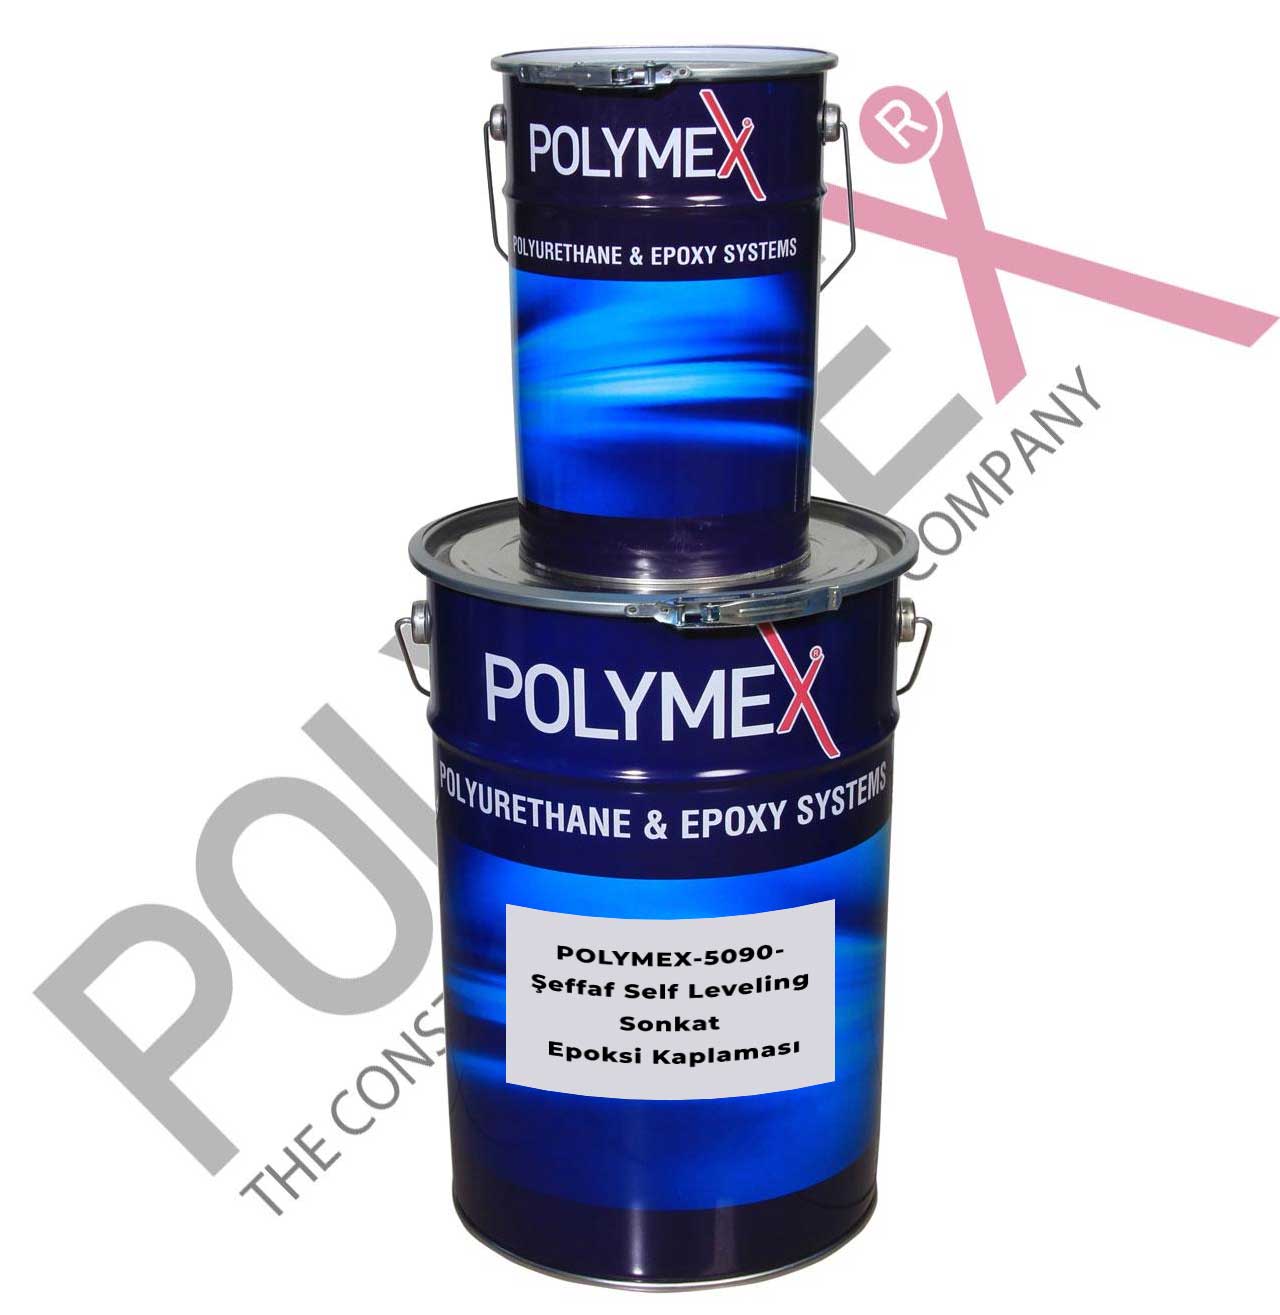 POLYMEX-5090- Şeffaf Self Leveling Sonkat Epoksi Kaplaması